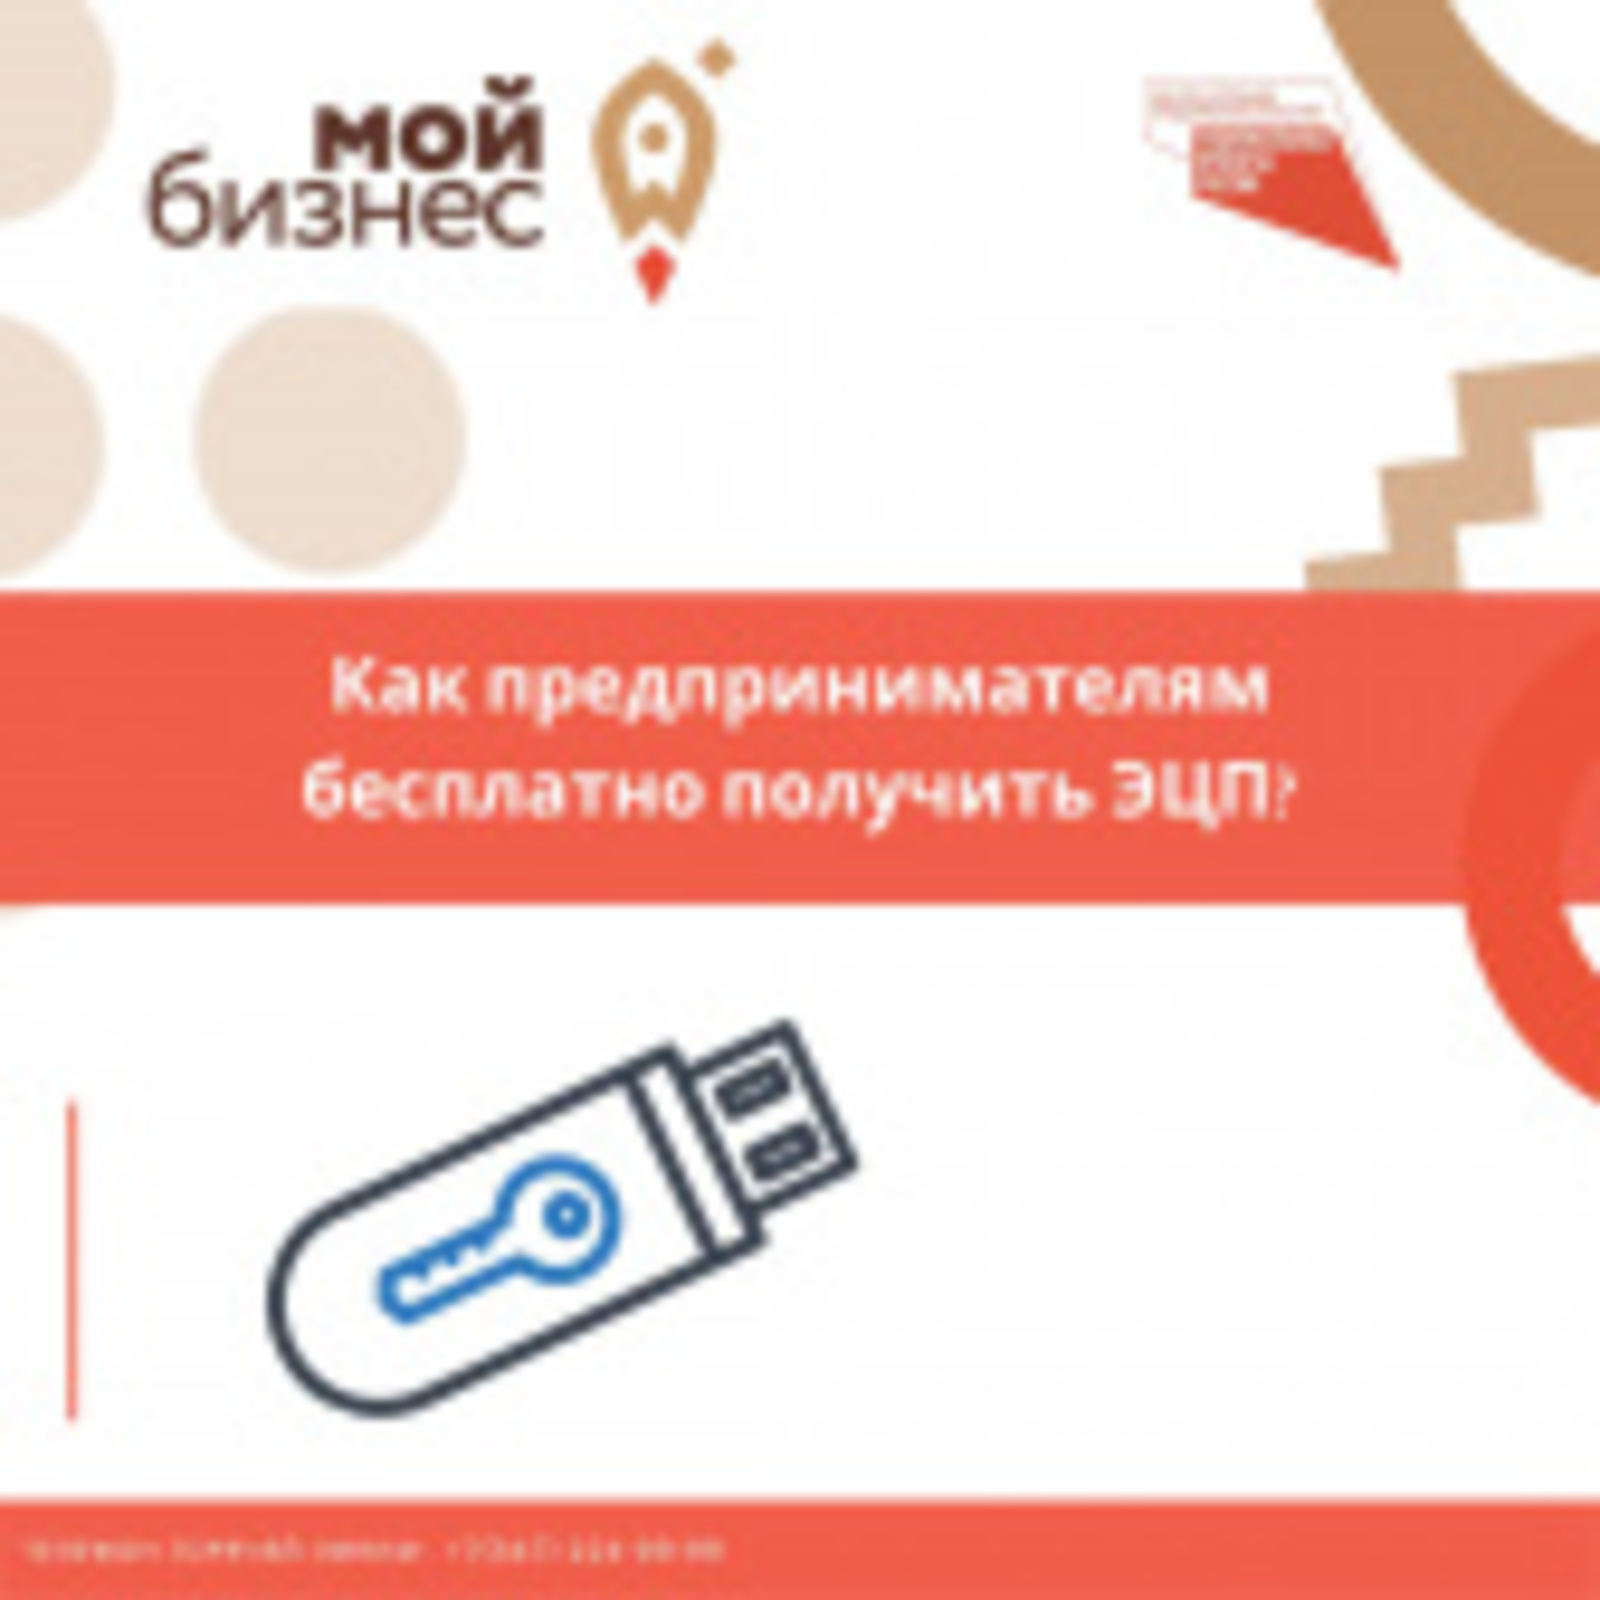 Нацпроект дает возможность предпринимателям Башкортостана бесплатно получить ЭЦП